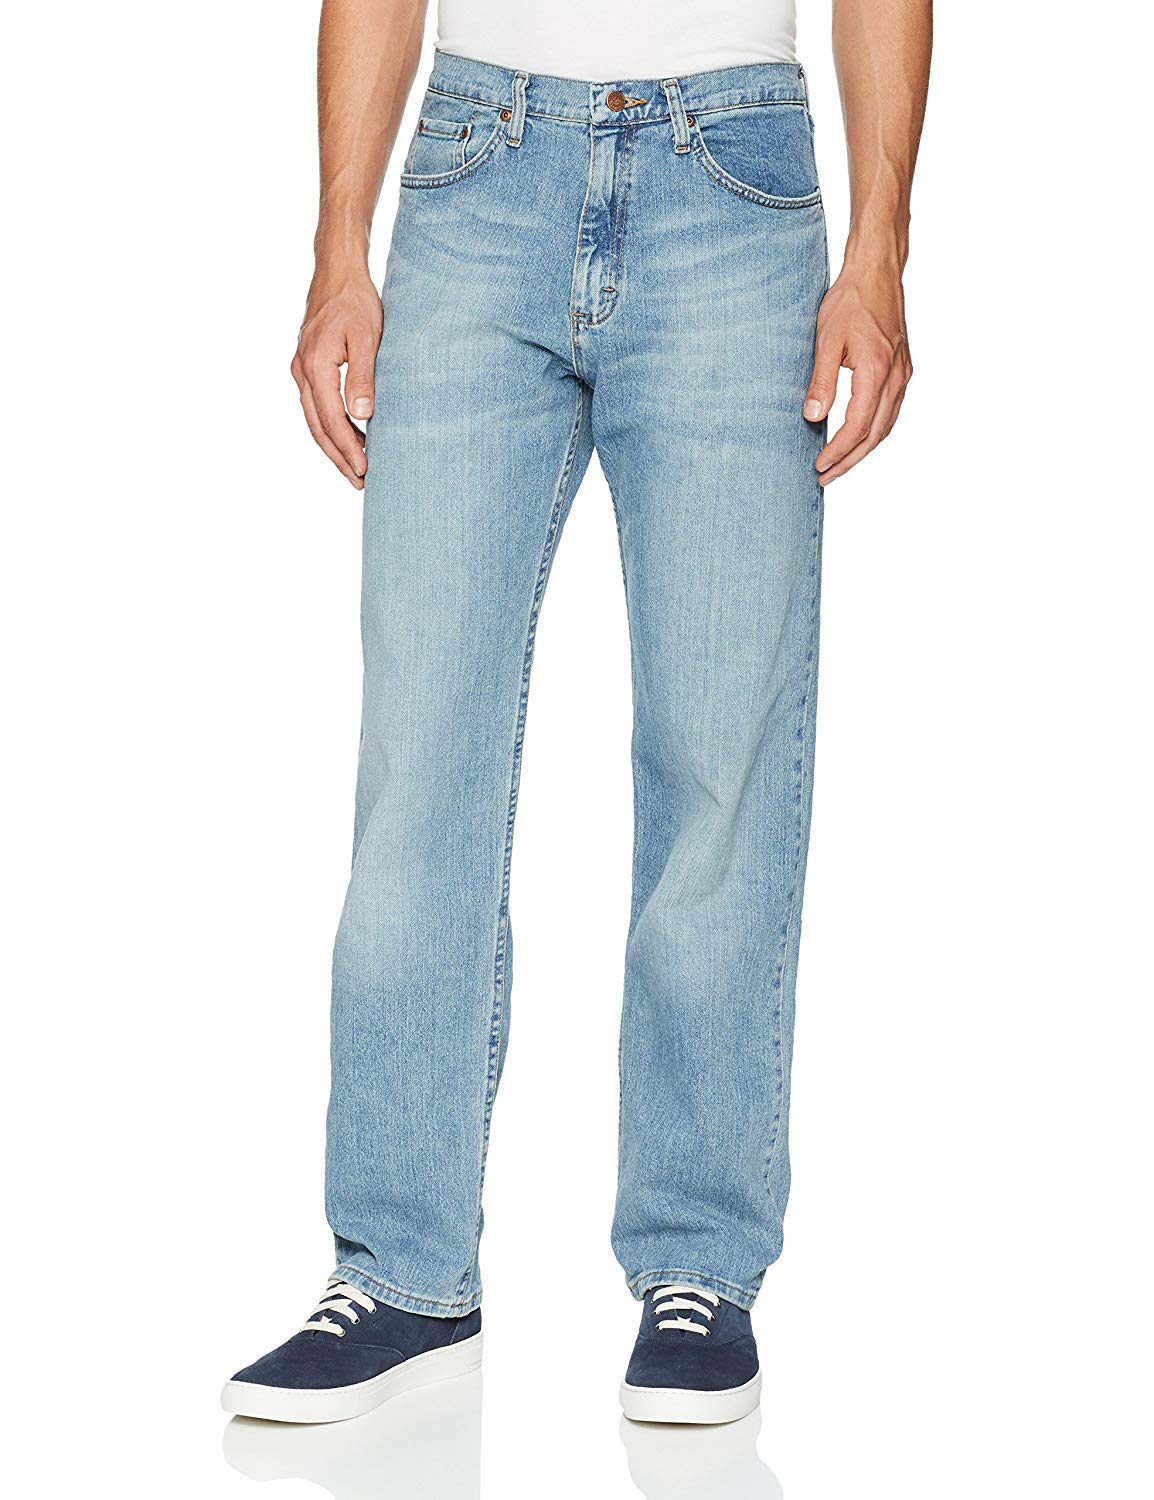 Wrangler Authentics Men's Classic 5-Pocket Relaxed Fit Jean, Bleached Denim Flex, 36W x 28L